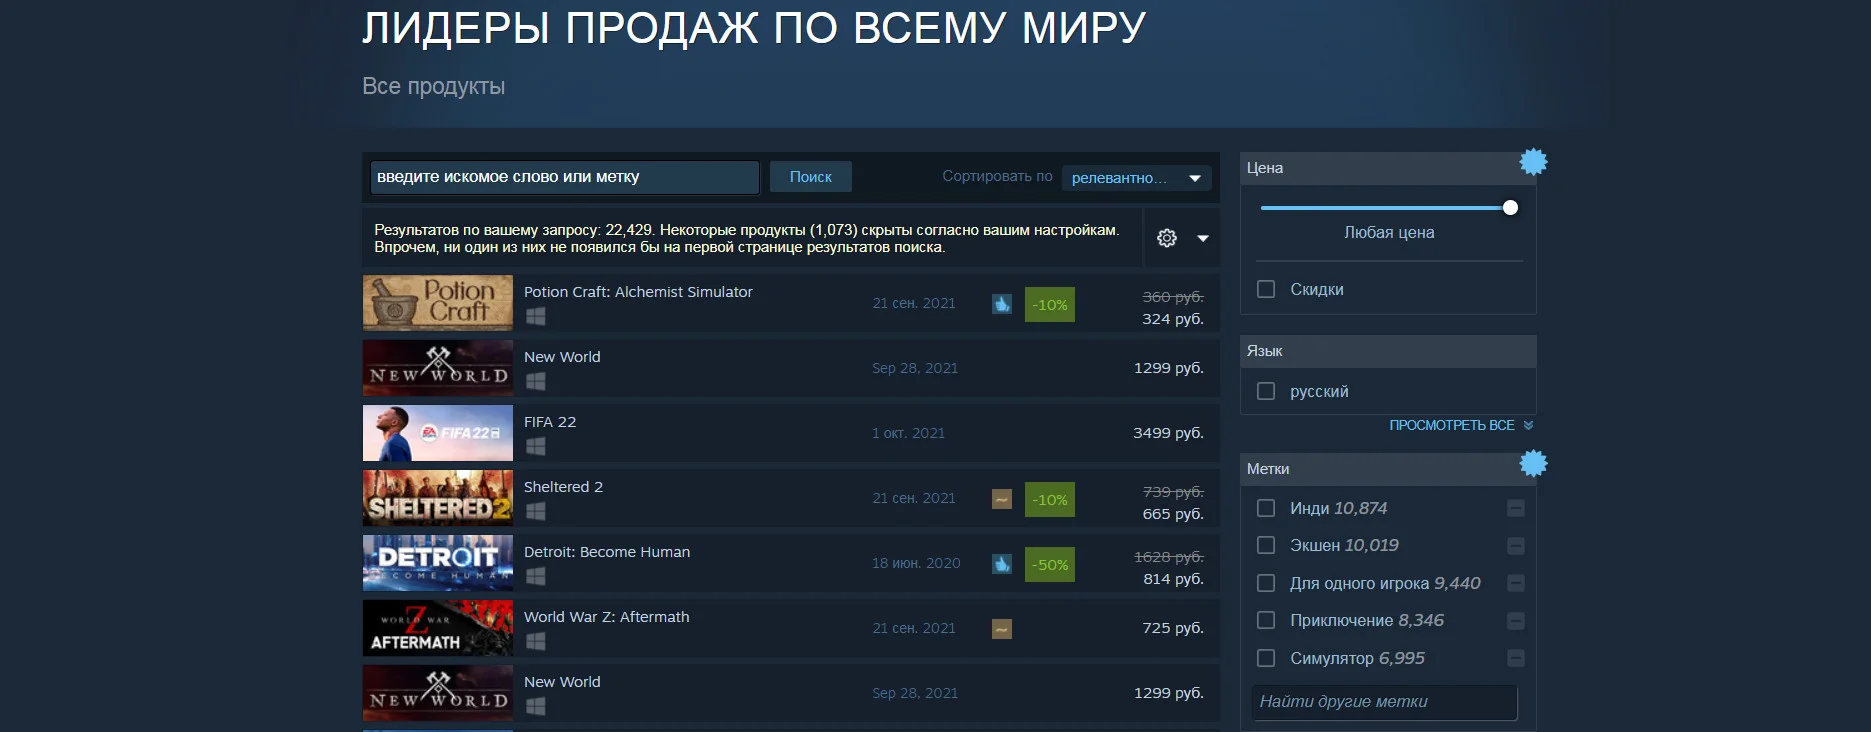 Potion Craft российской студии стала лидером продаж по всему миру в Steam - фото 1